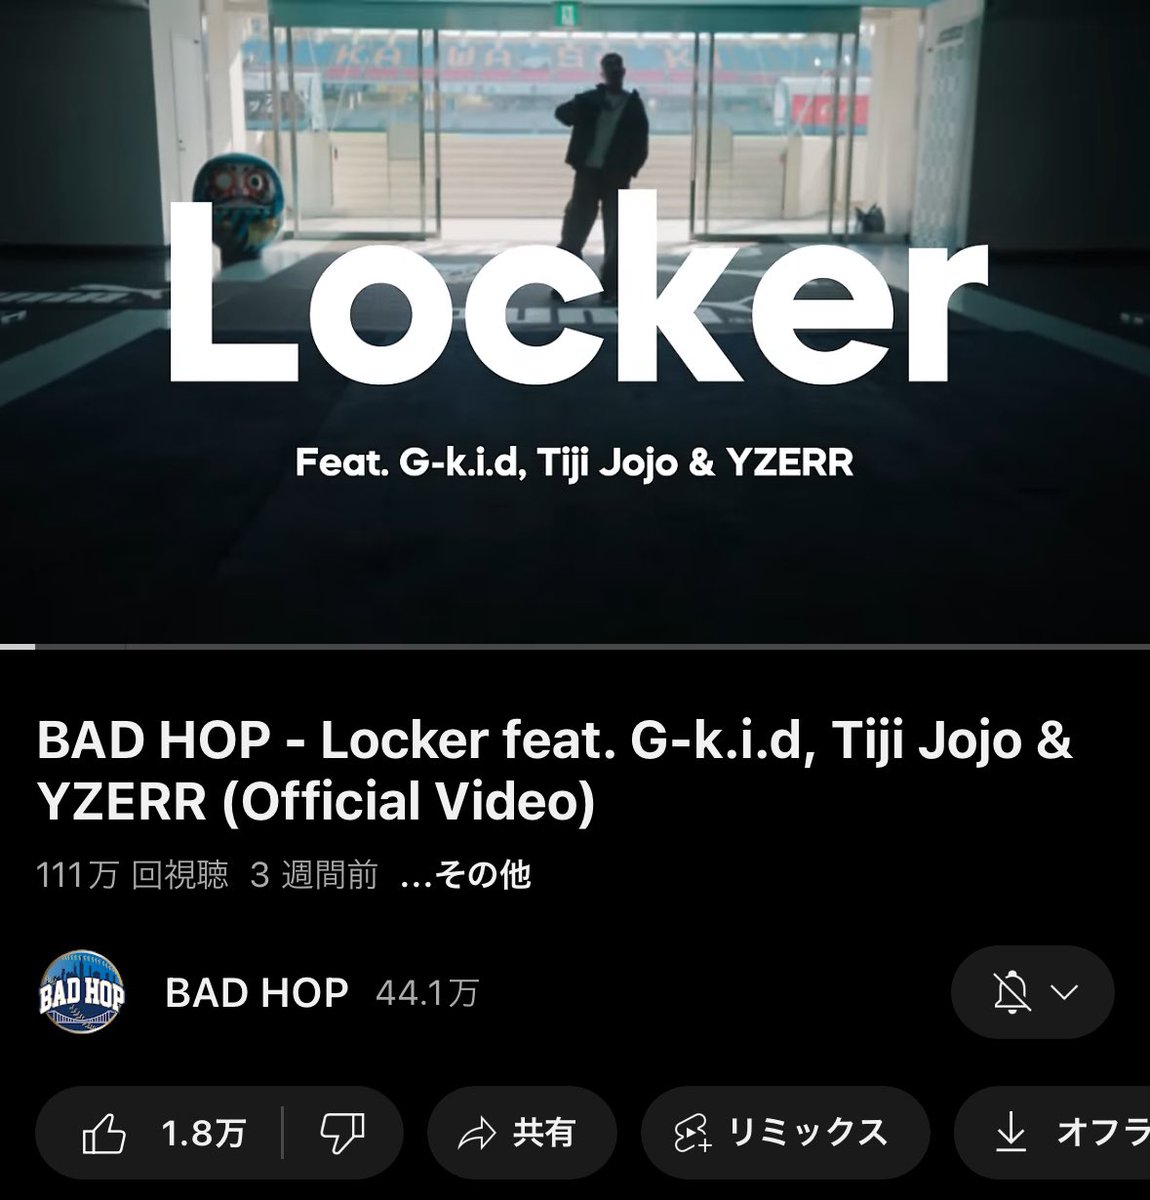 「Locker Feat, G-K.i.d, Tiji Jojo & YZERR」 のMVが100万回再生を突破🎊 youtu.be/WmgiI_juOP4?si…